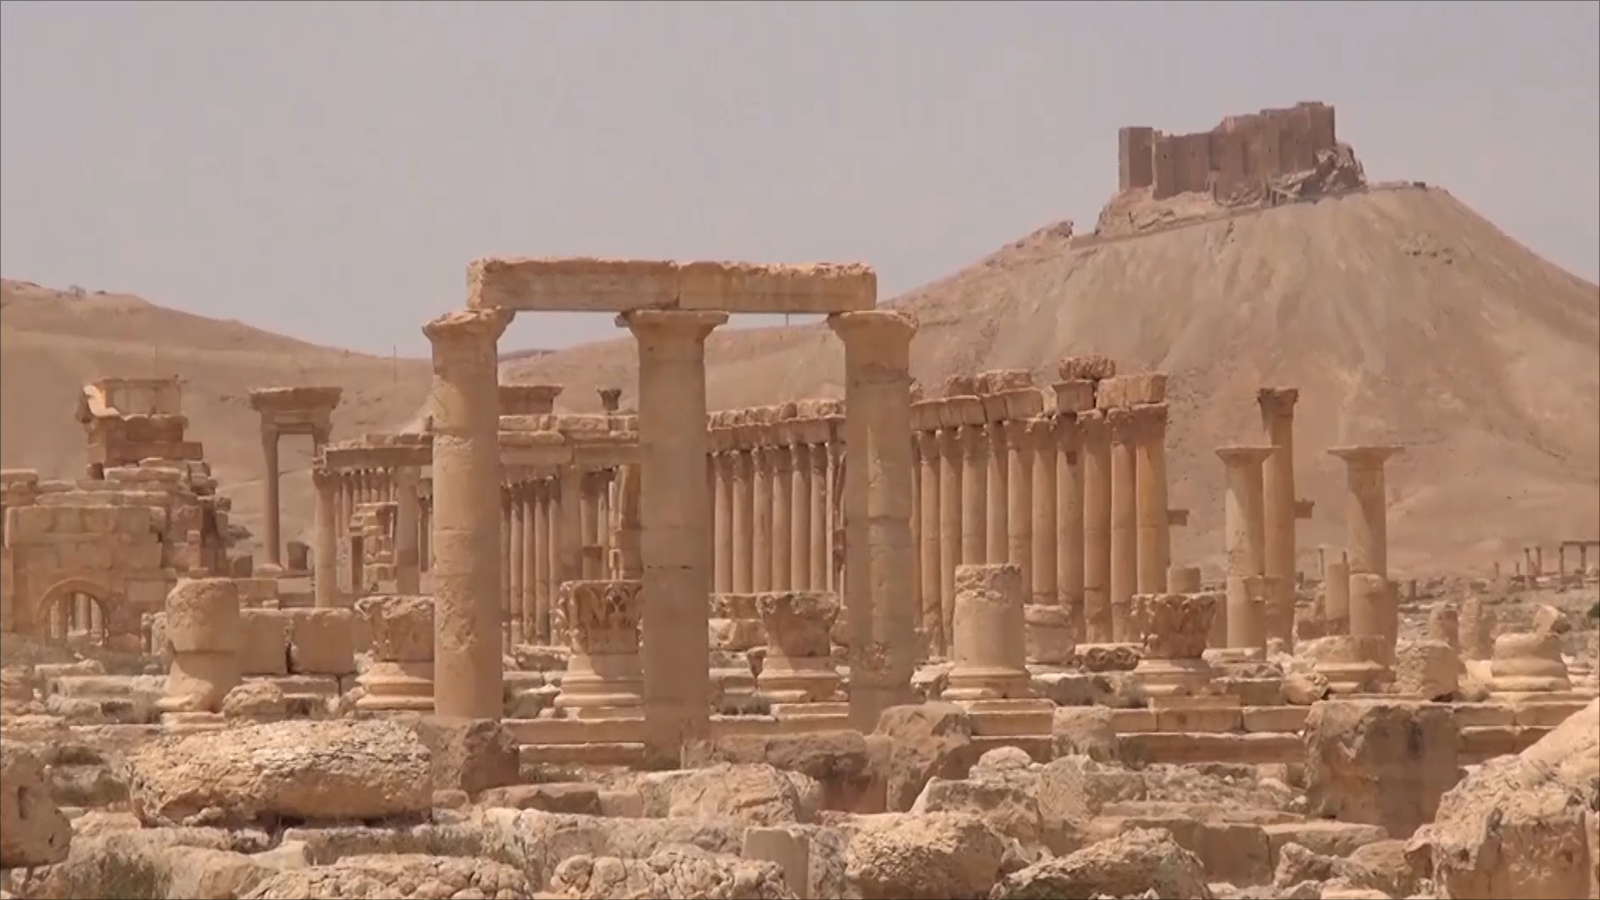 أضرار كبيرة لحقت بمدينة تدمر الأثرية في سوريا(الجزيرة)